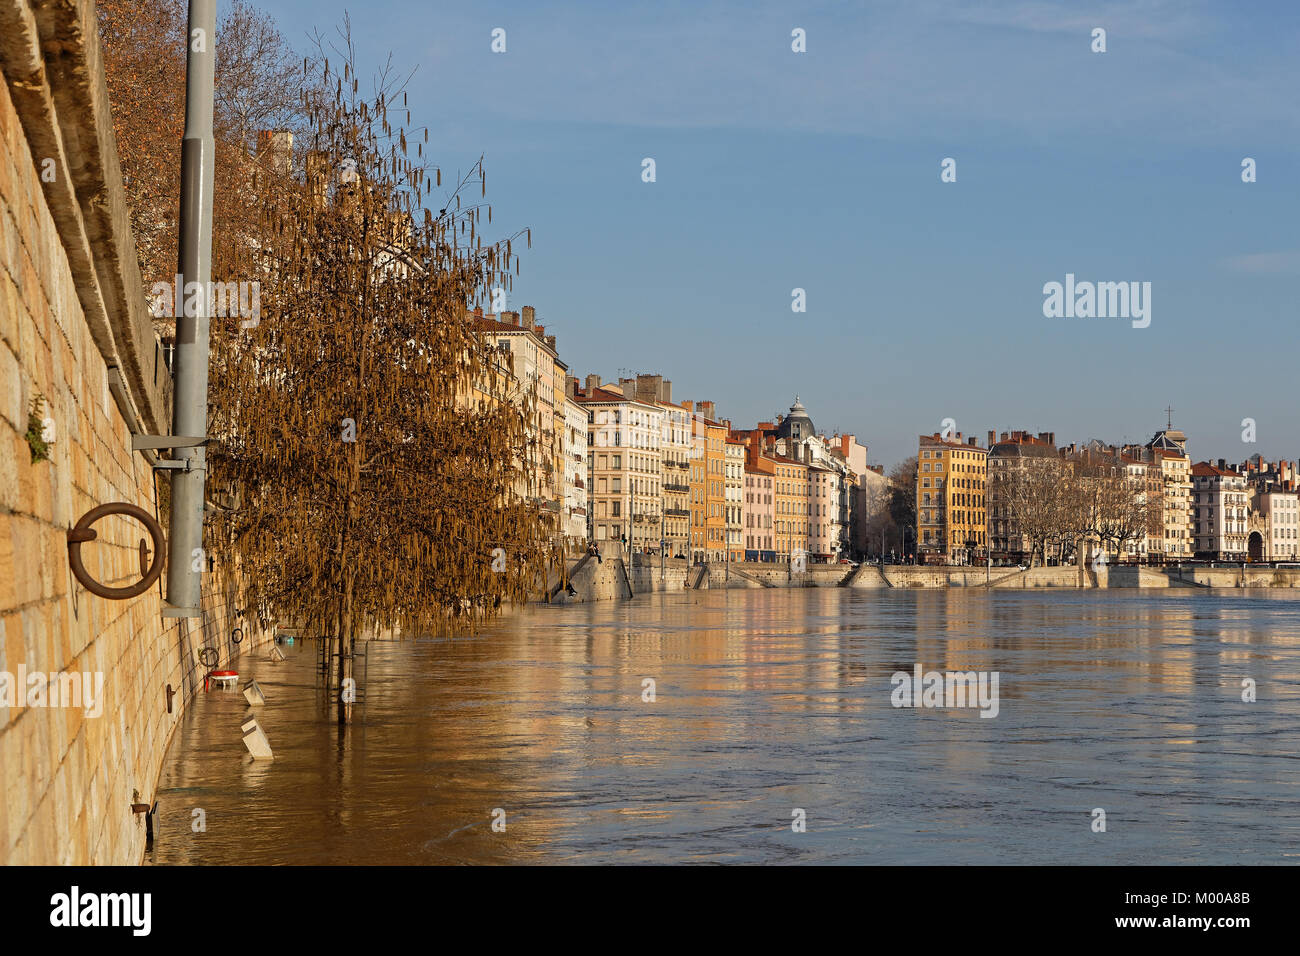 Lione, Francia, 13 Gennaio 2018 : Le inondazioni del fiume Saone nel centro citta'. Saone è aperto alla navigazione per tutto l'anno tranne quando è in piena. Foto Stock